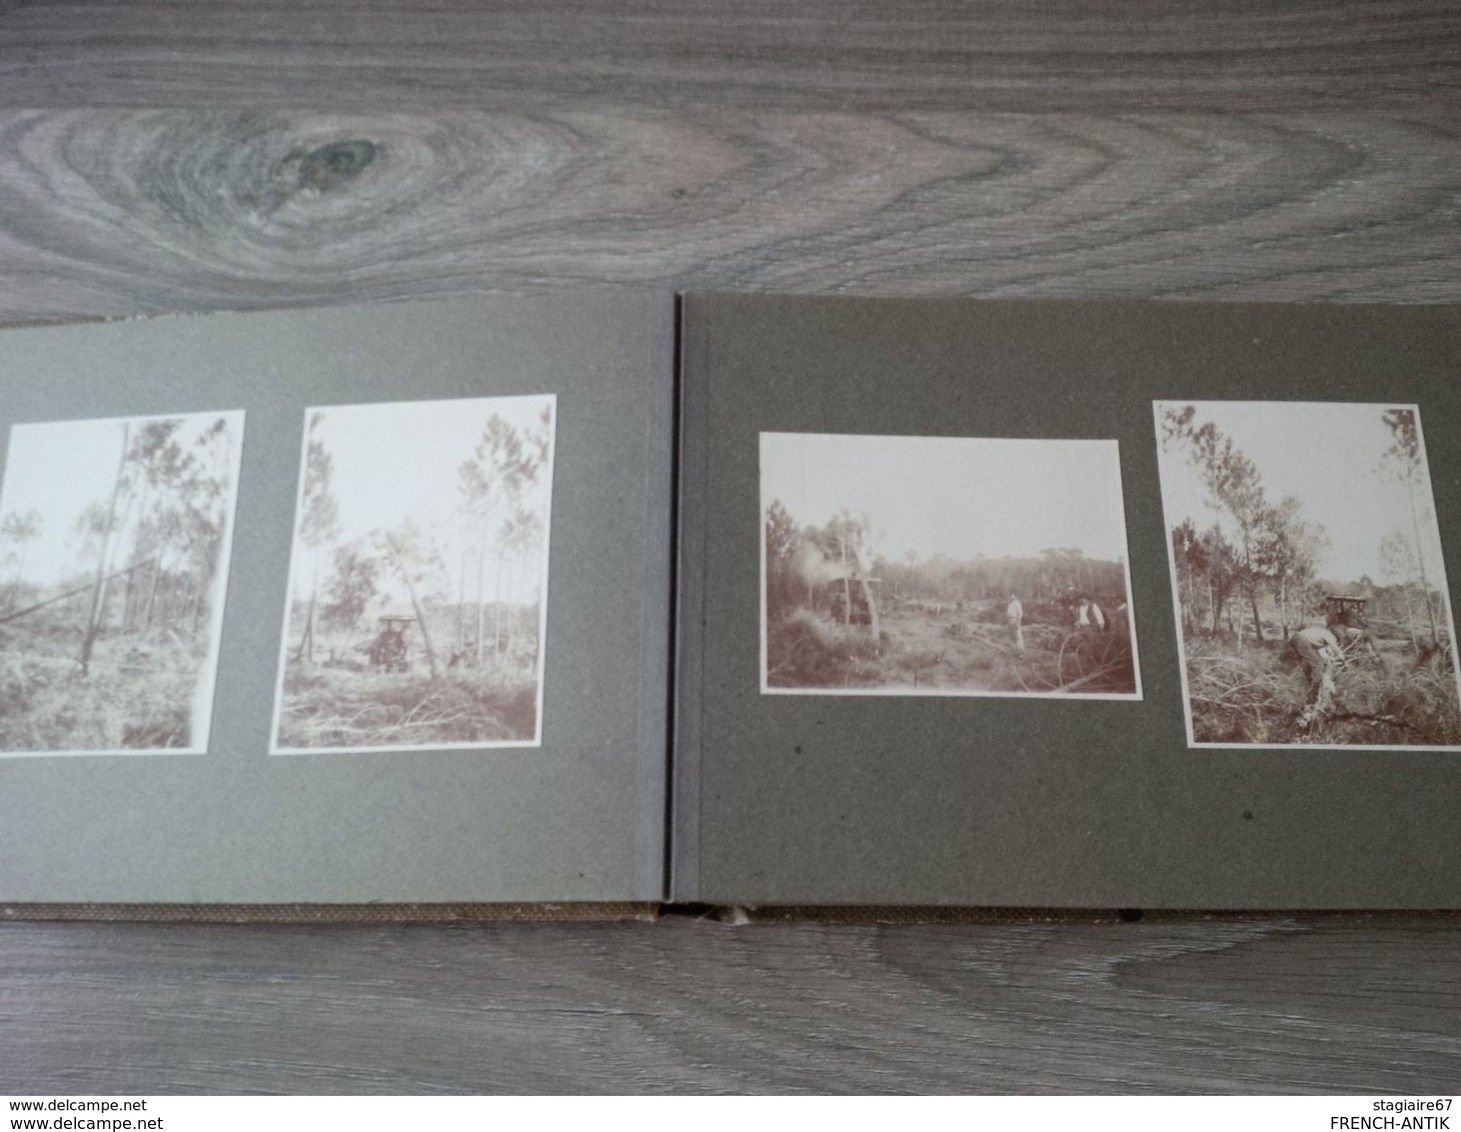 ALBUM DE FAMILLE LIEUX A IDENTIFIER METIER CONSTRUCTION AUTOCHENILLE RECOLTE 77 PHOTOS - Albums & Collections